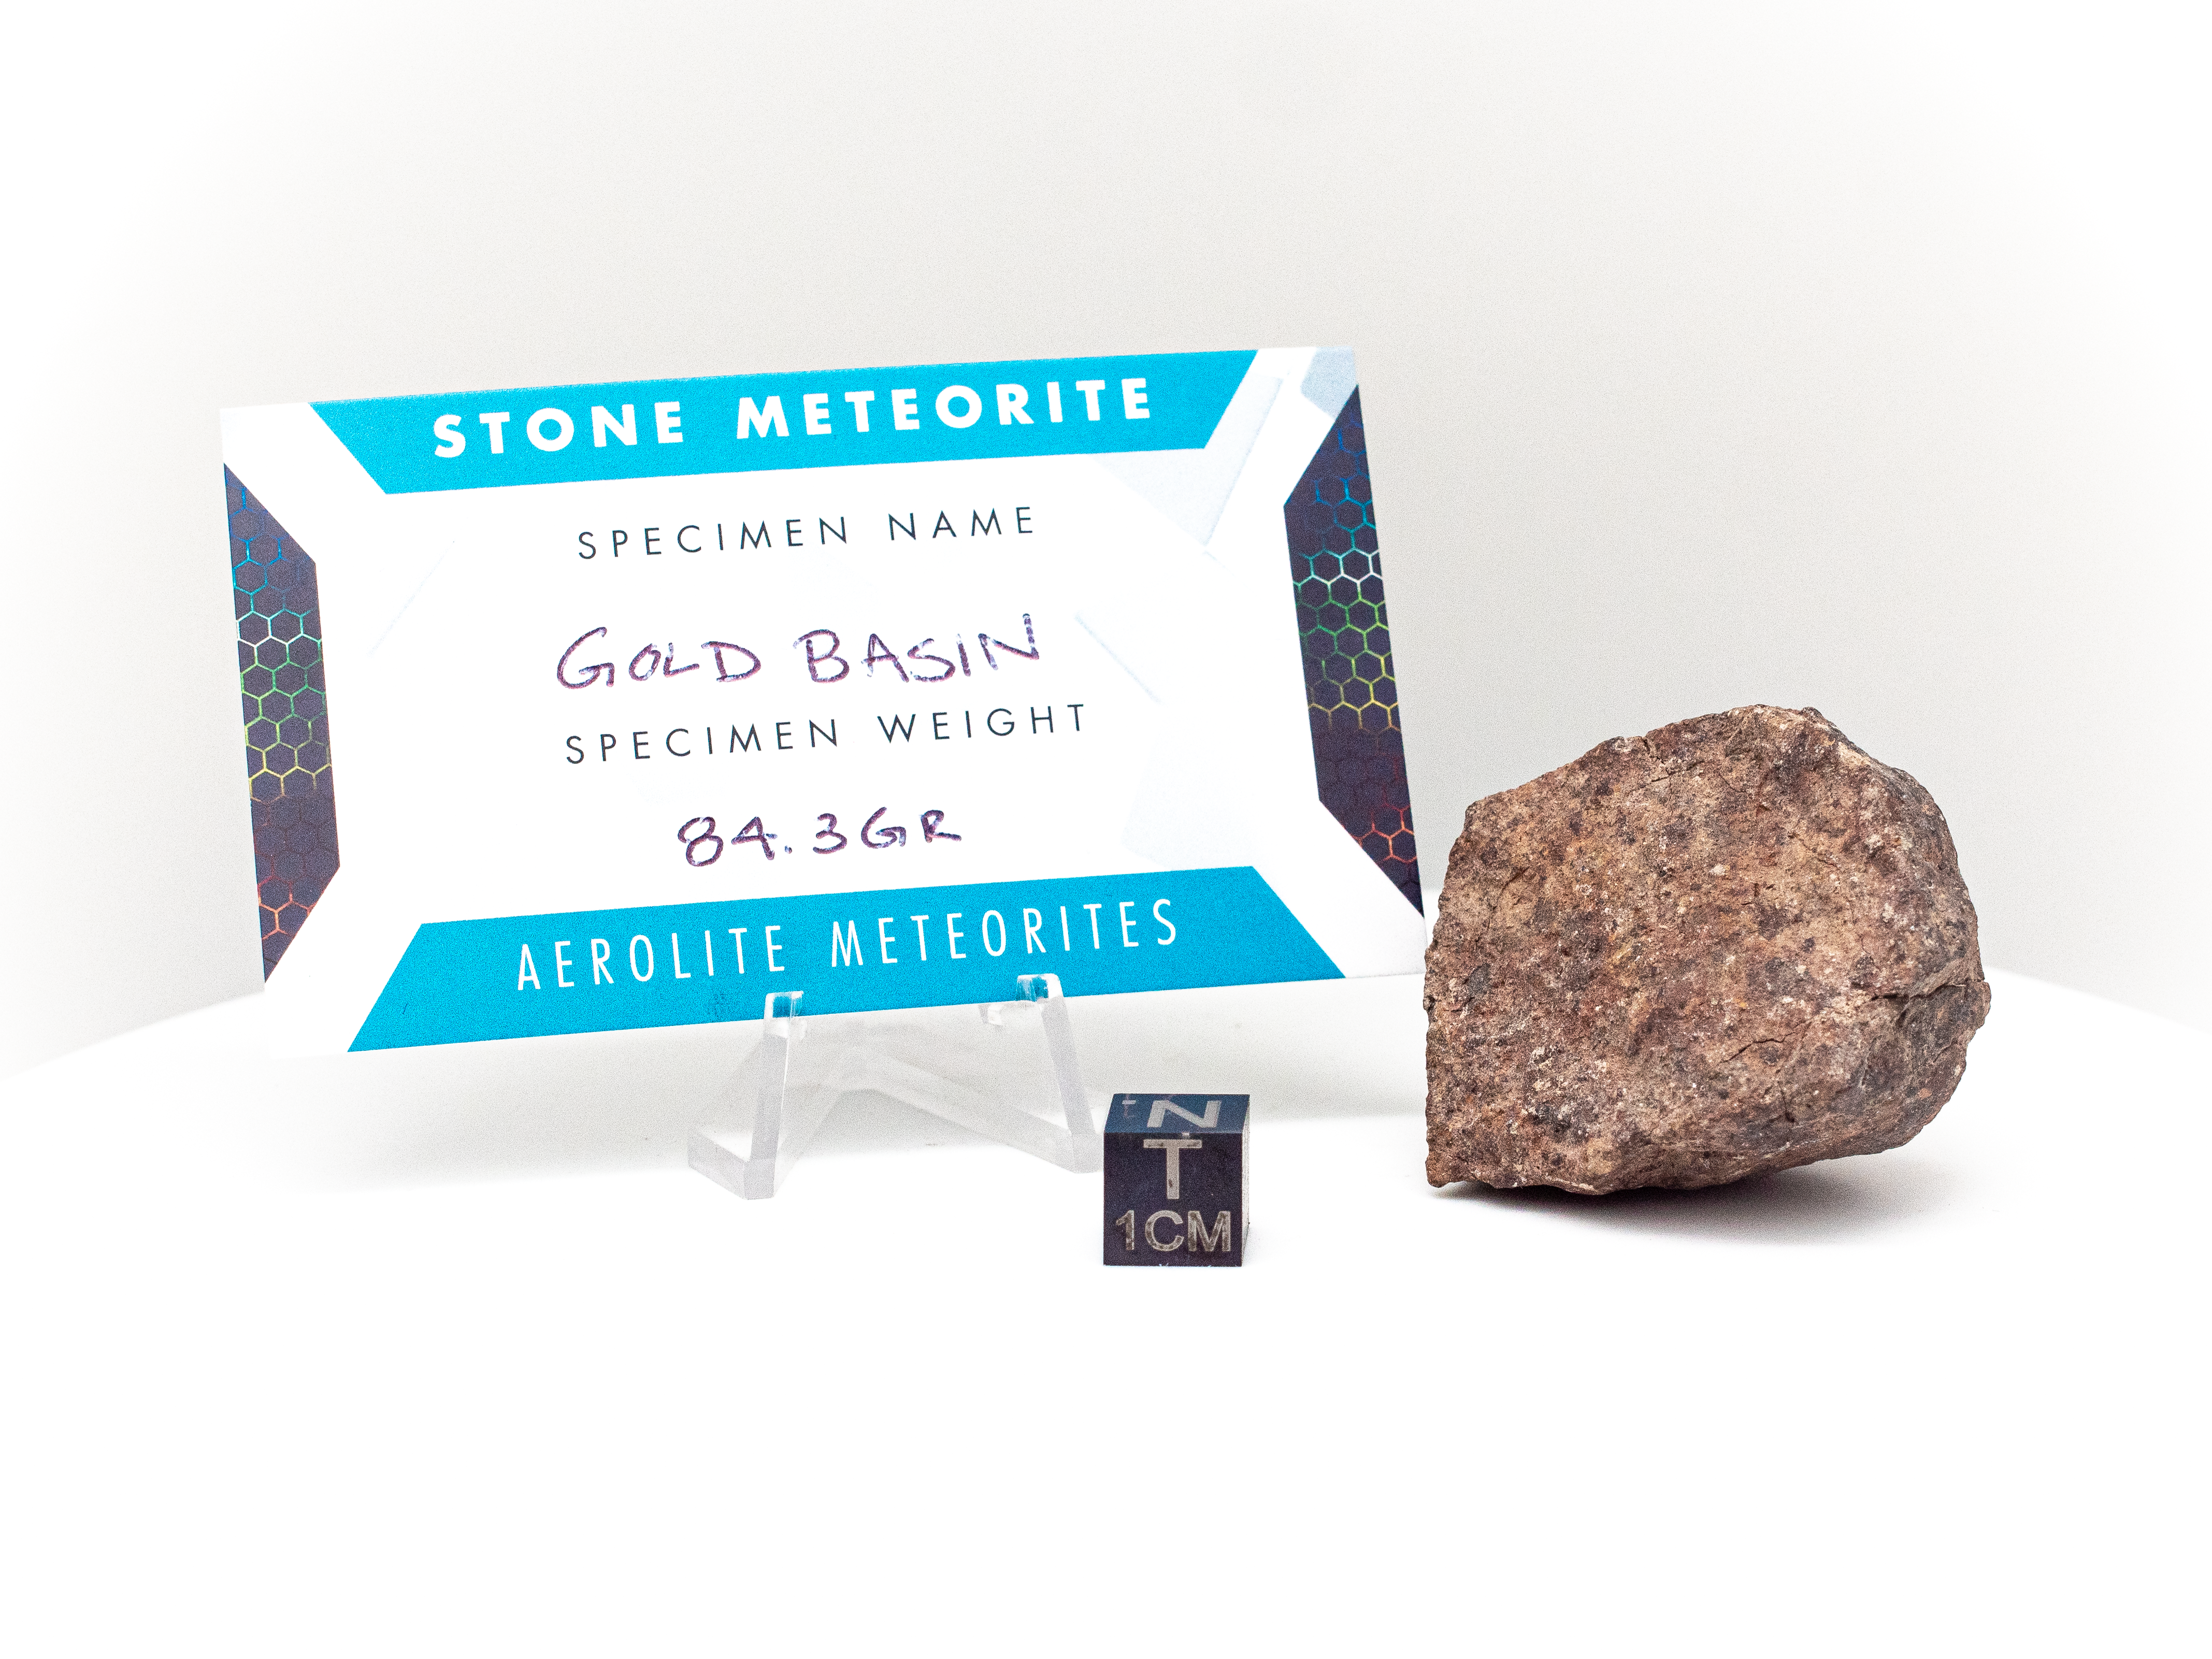 gold basin meteorite